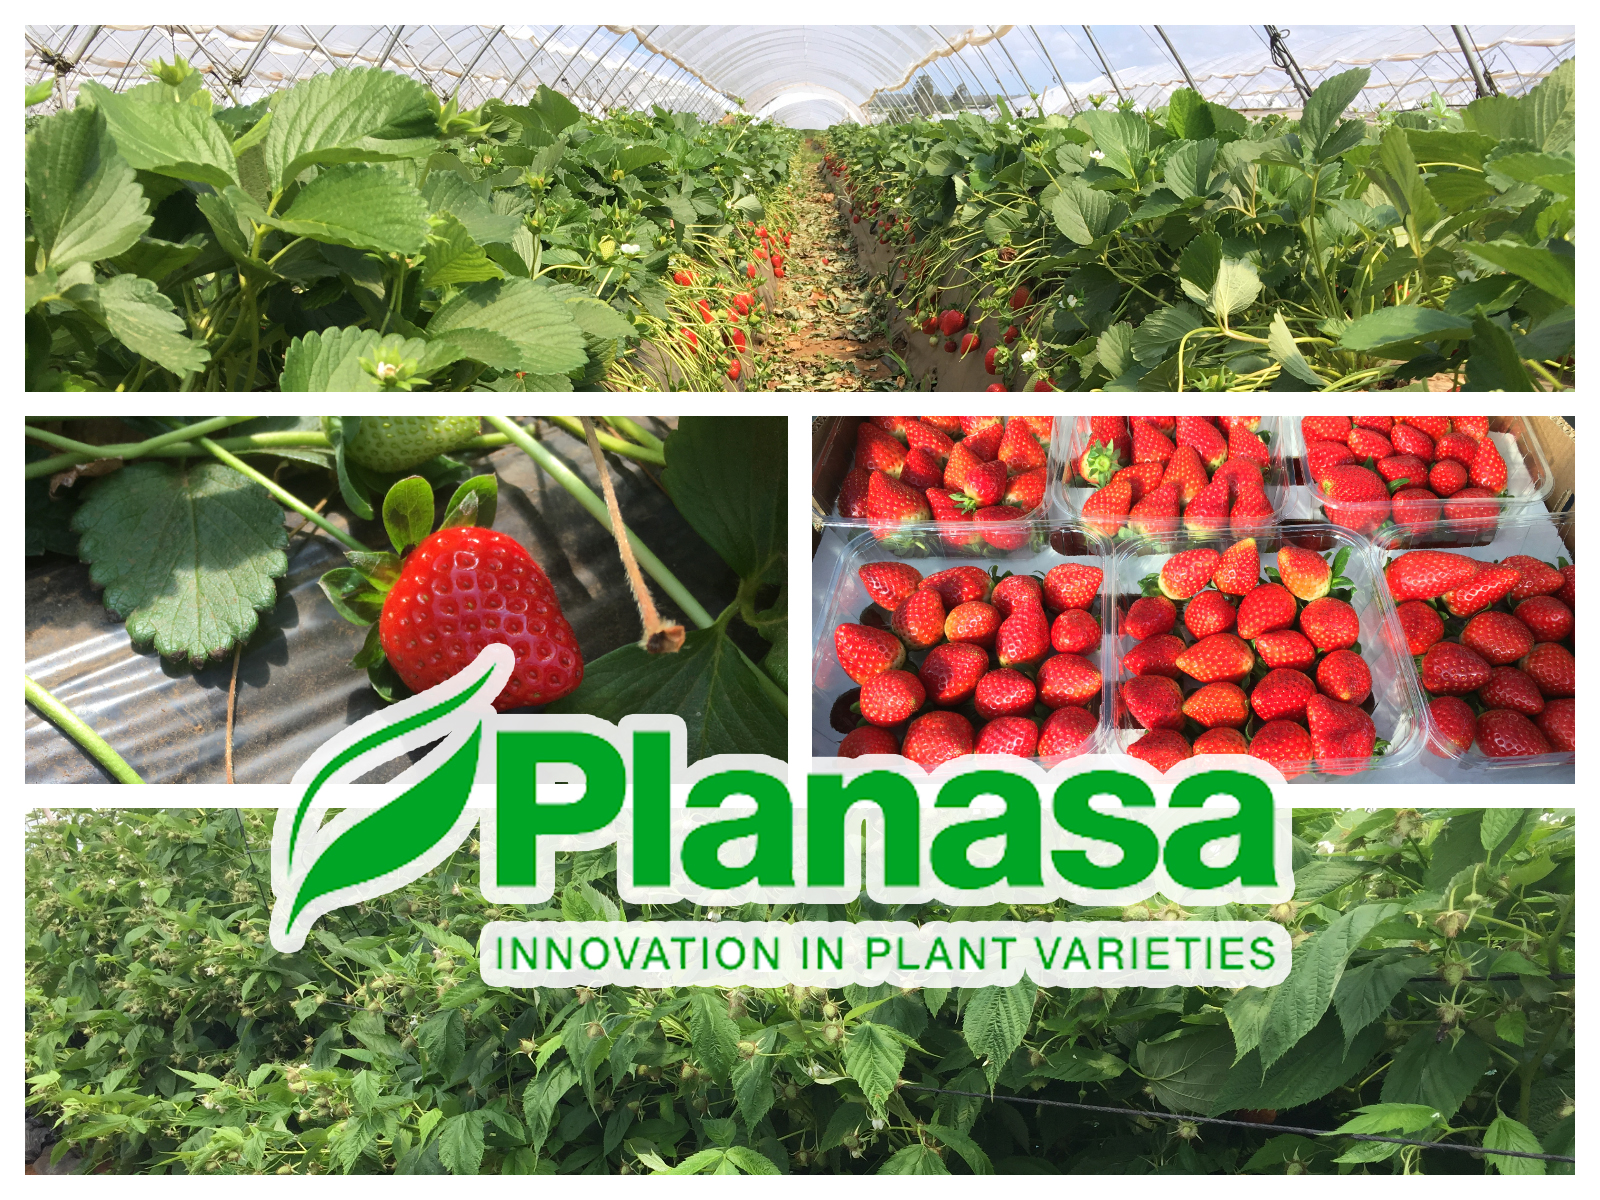 Les variétés de fruits rouges de Planasa se développent favorablement au Maroc